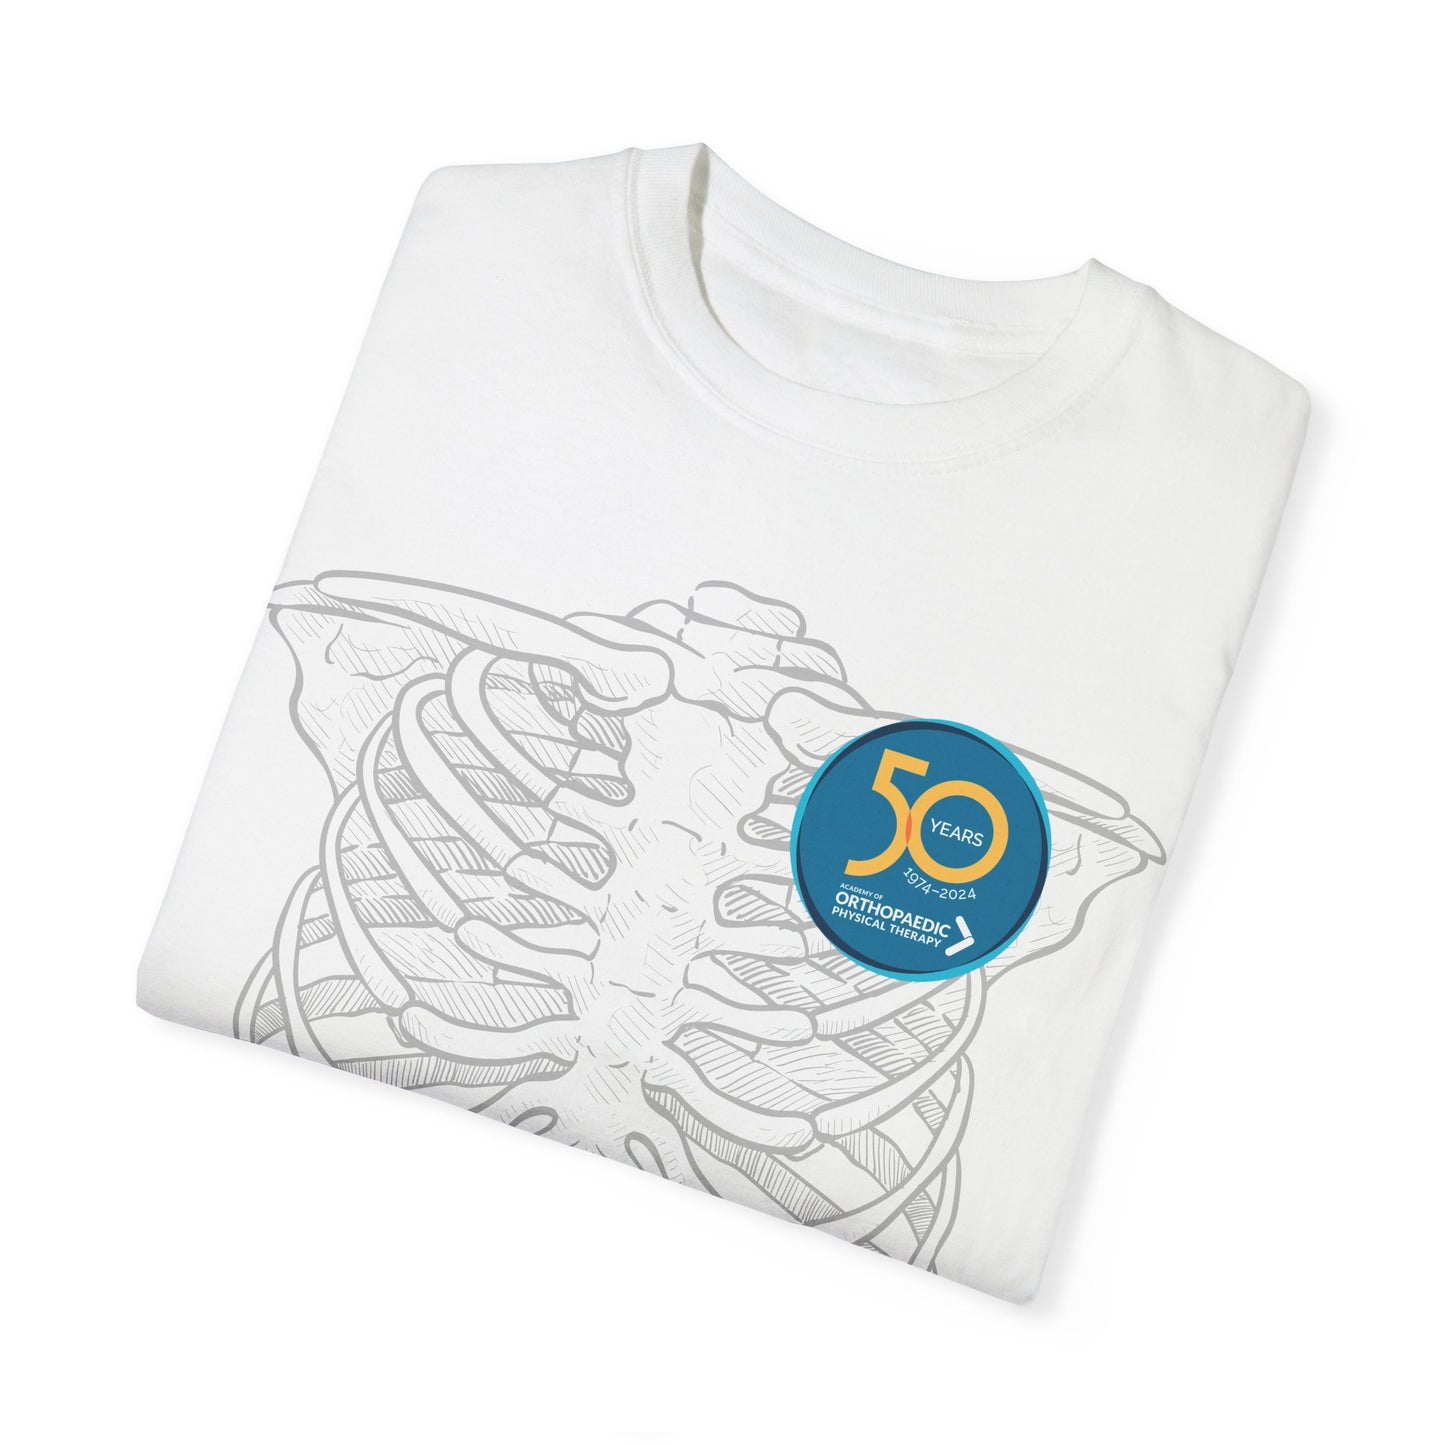 50th Spine Timeline T-shirt